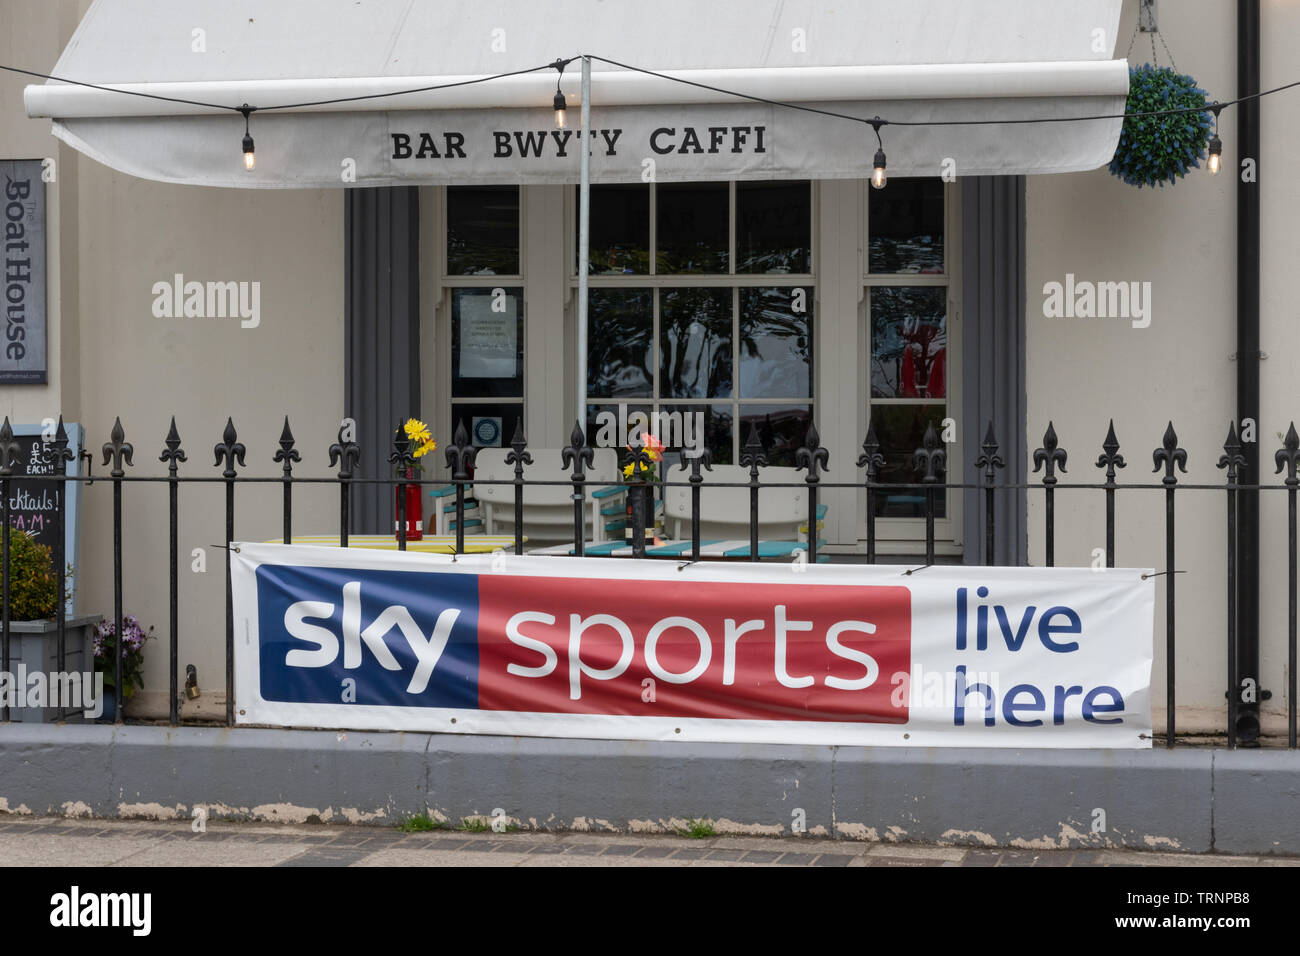 Bar (lingua gallese bwyty o caffi) con Sky Sports live qui banner pubblicitari al di fuori Foto Stock